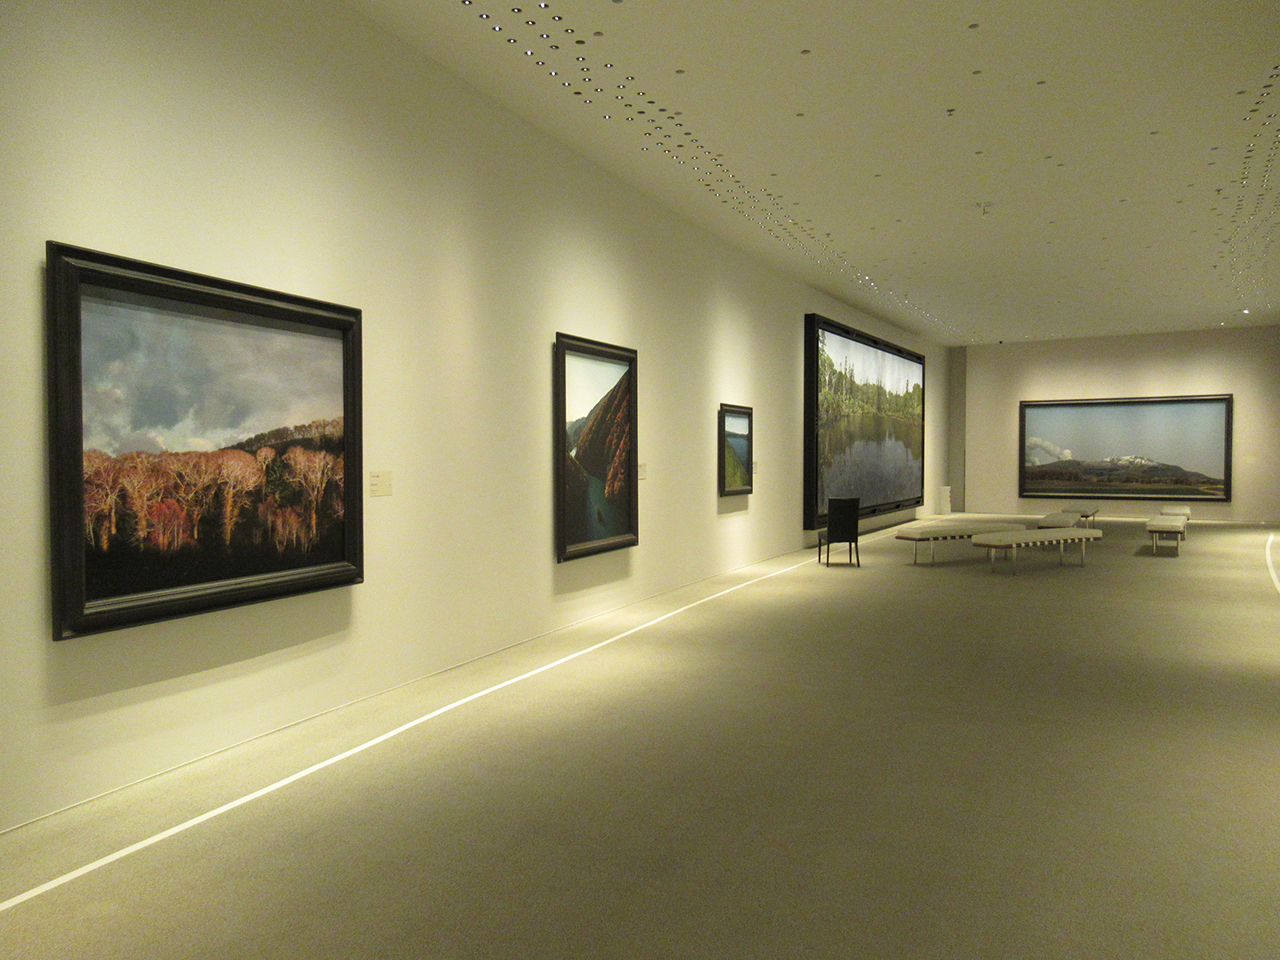 野田が北海道の風景を描いた同館収蔵の作品5点すべてが展示されている。